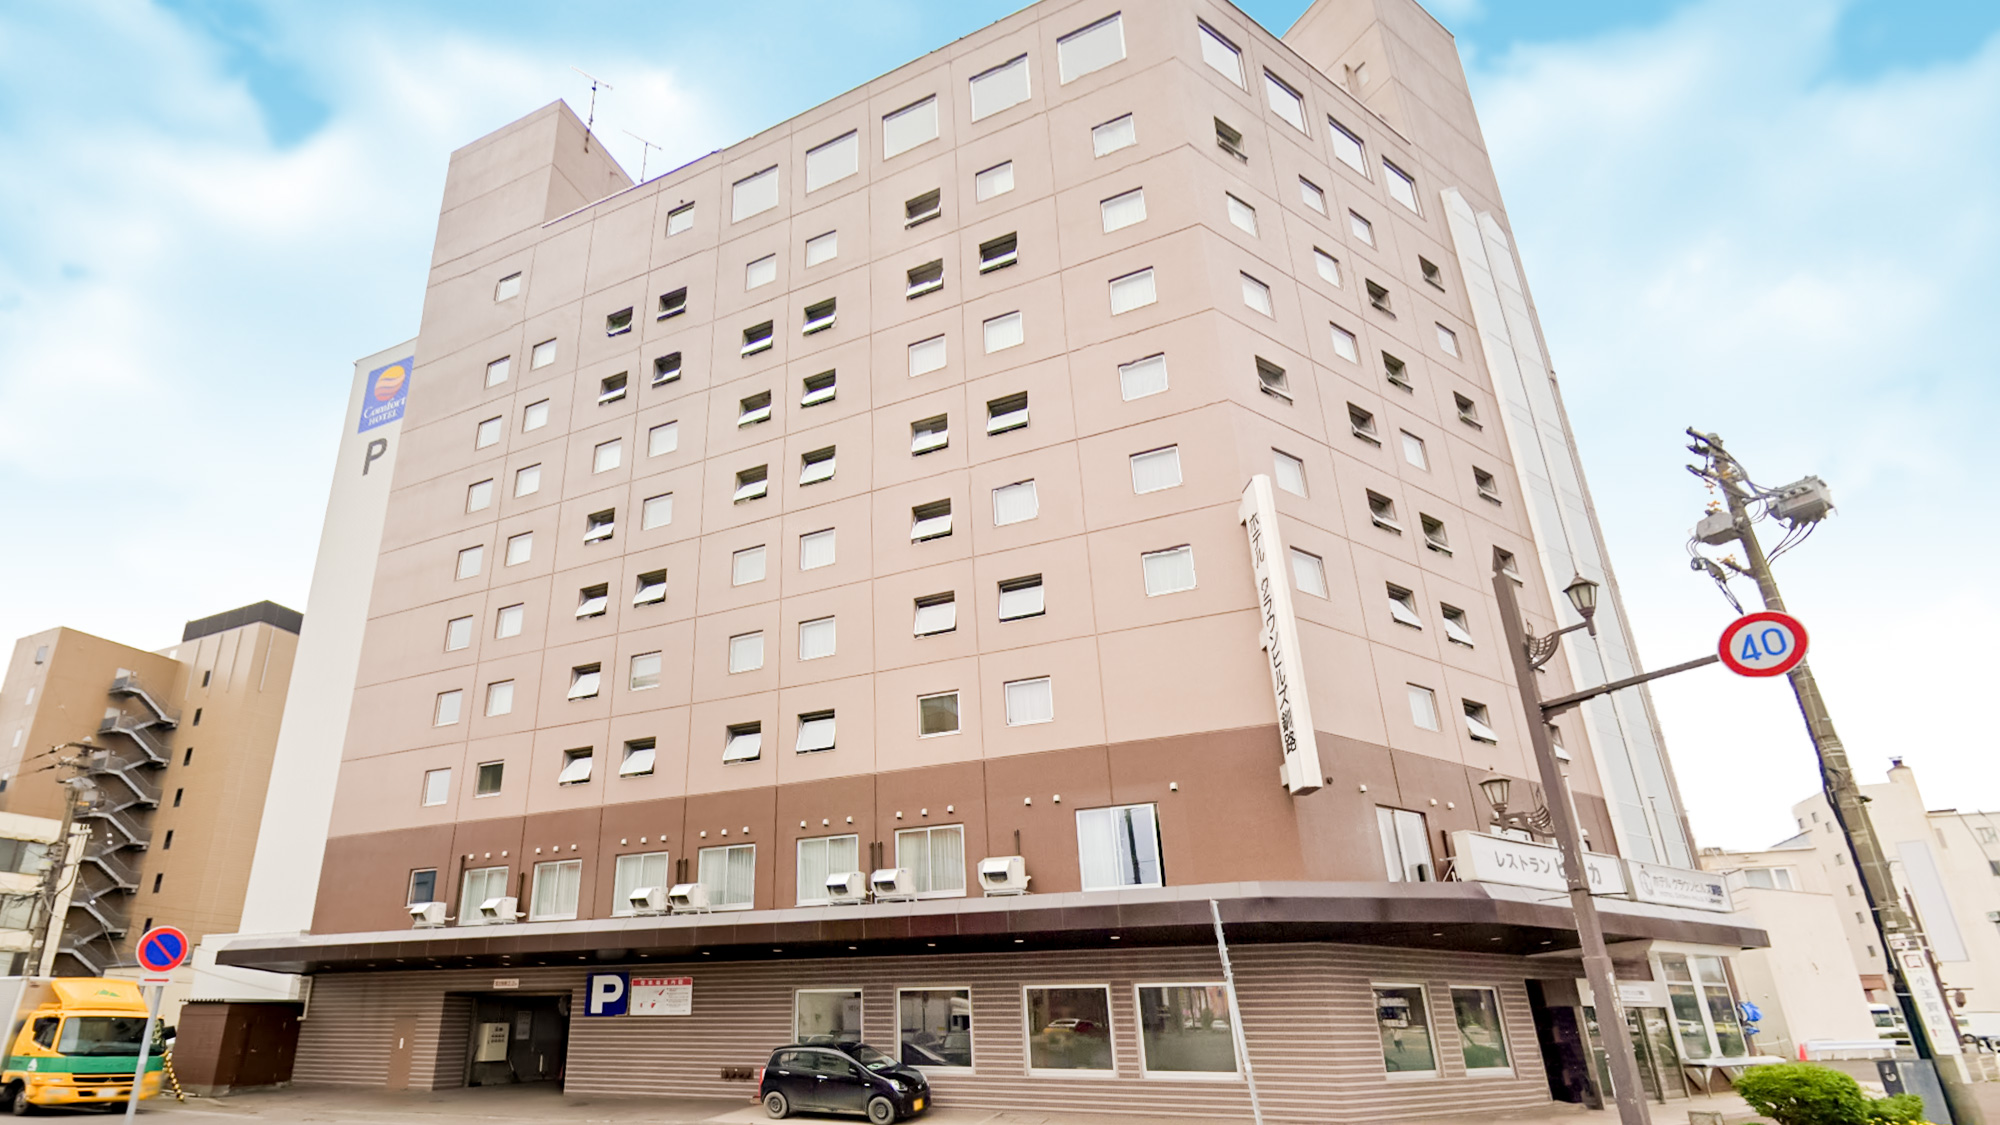 釧路でおすすめのホテル教えて下さい。